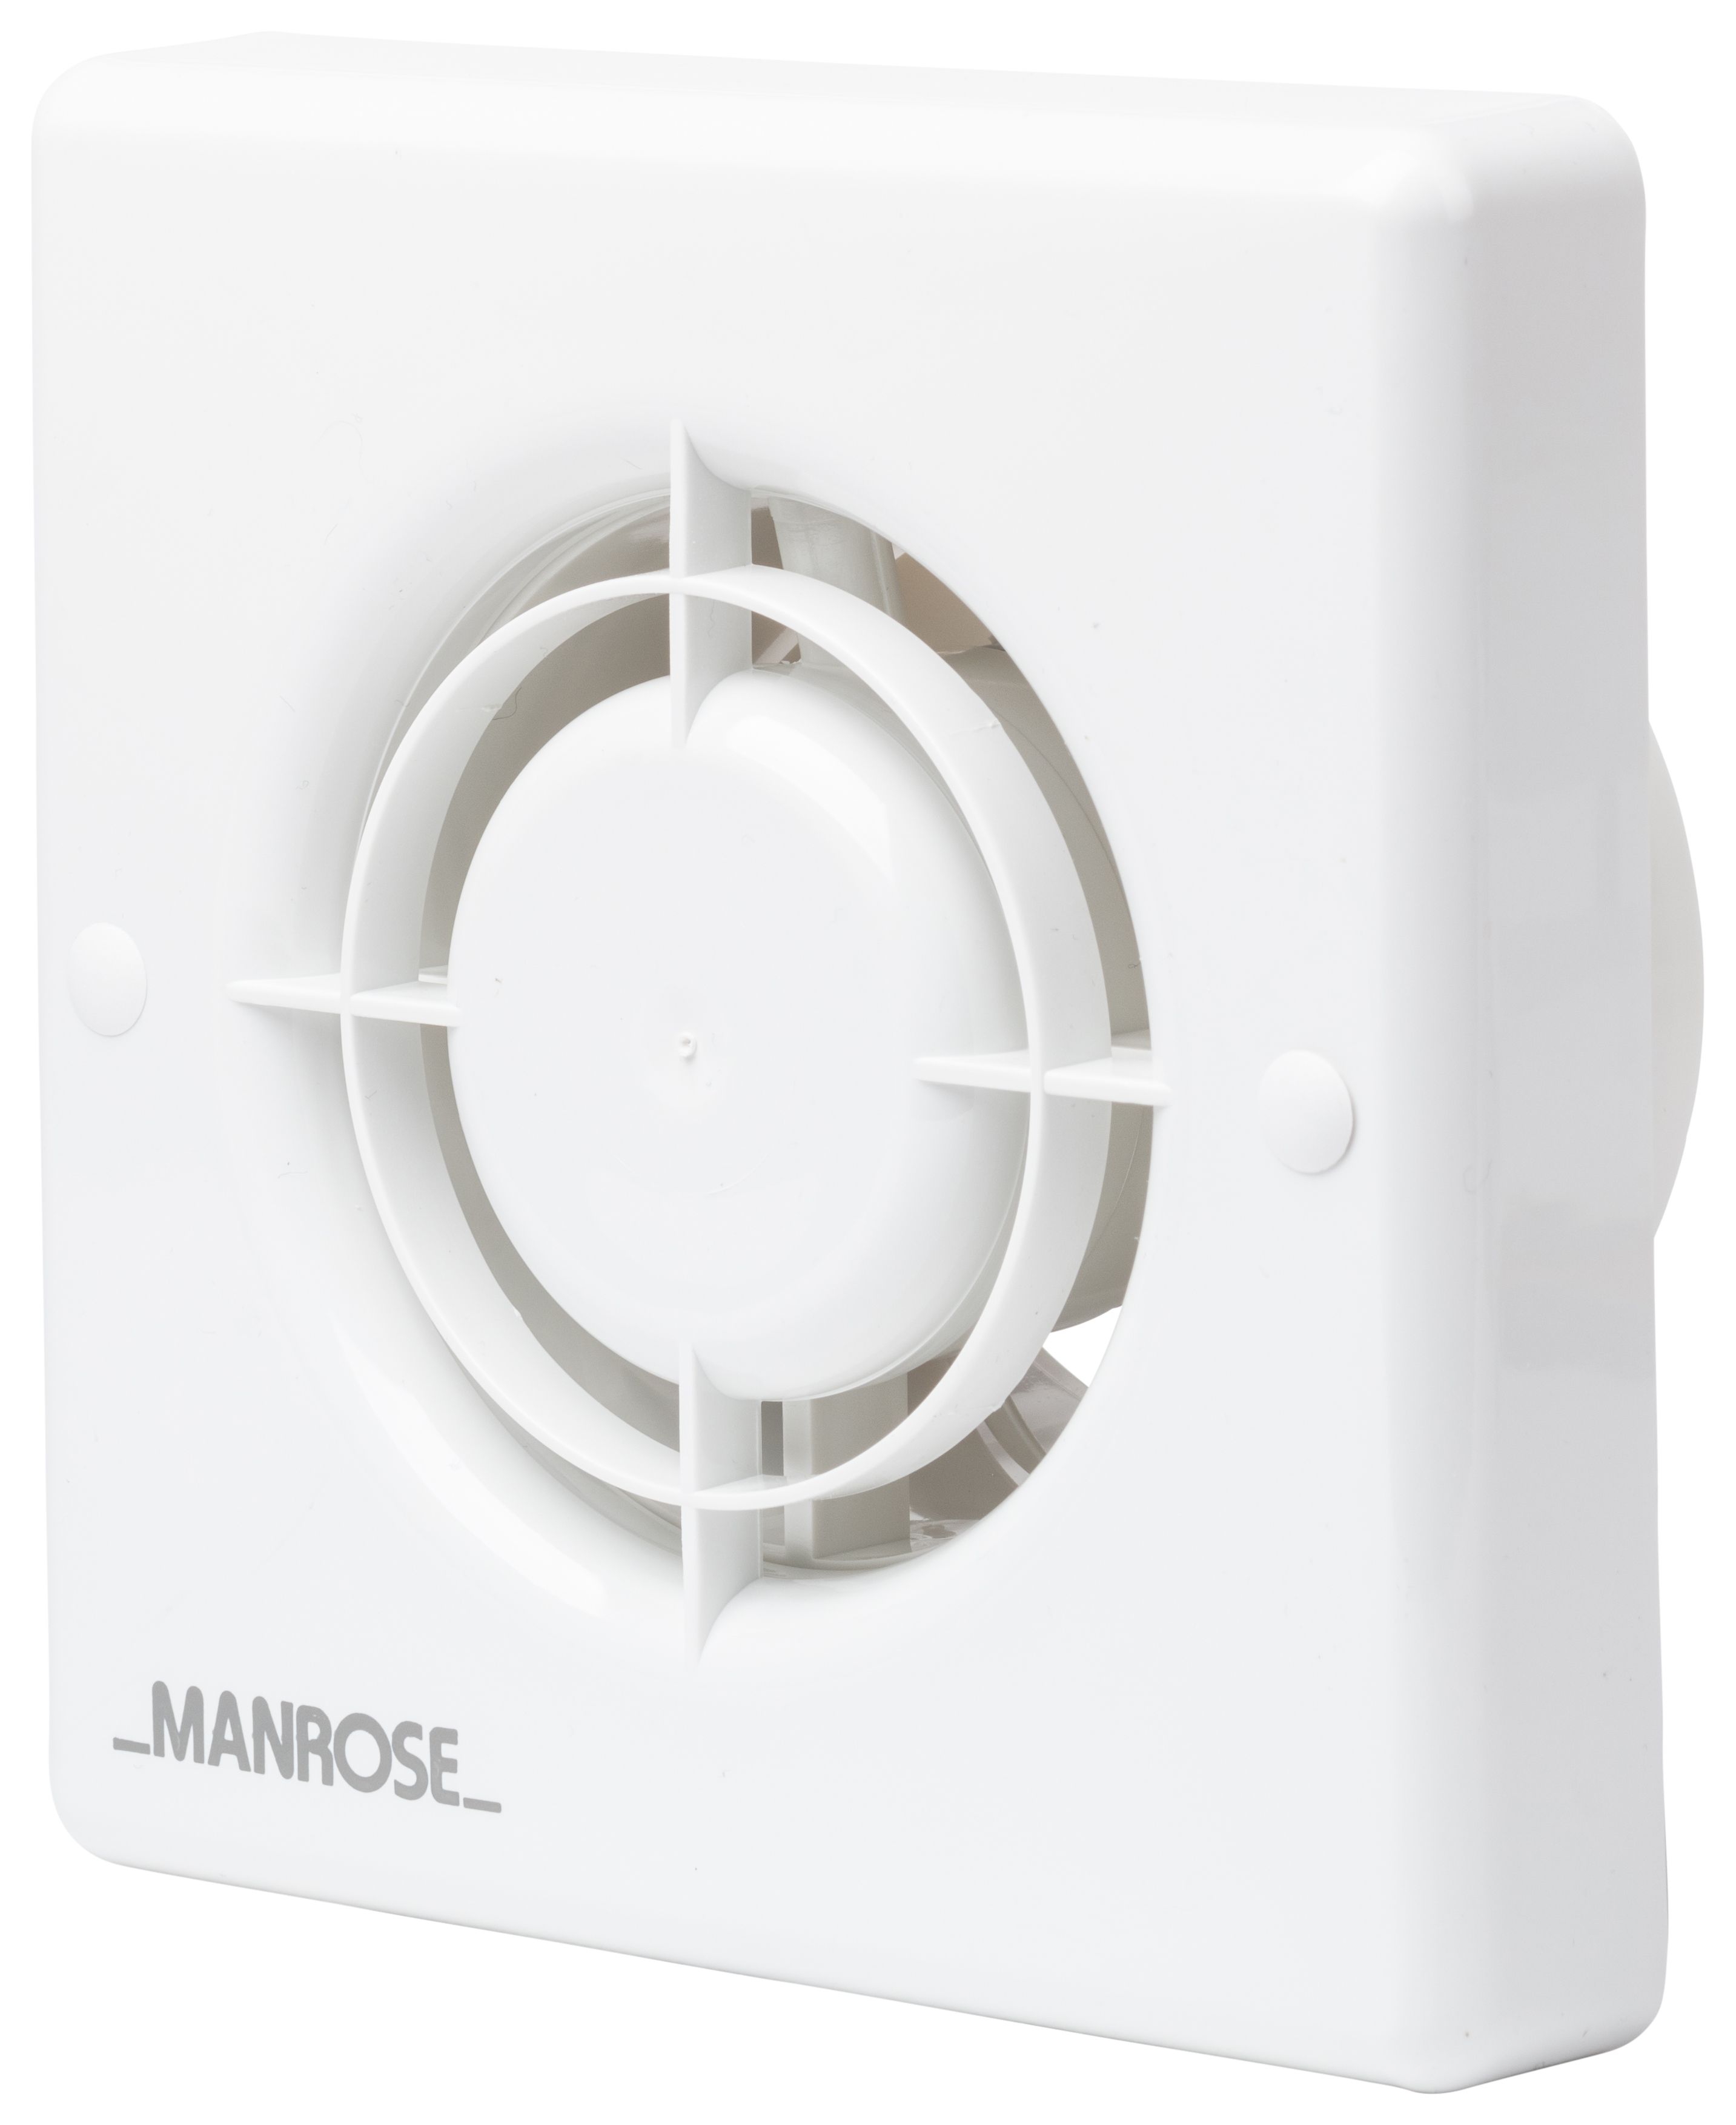 Manrose White Slatted Bathroom Fan - 100mm